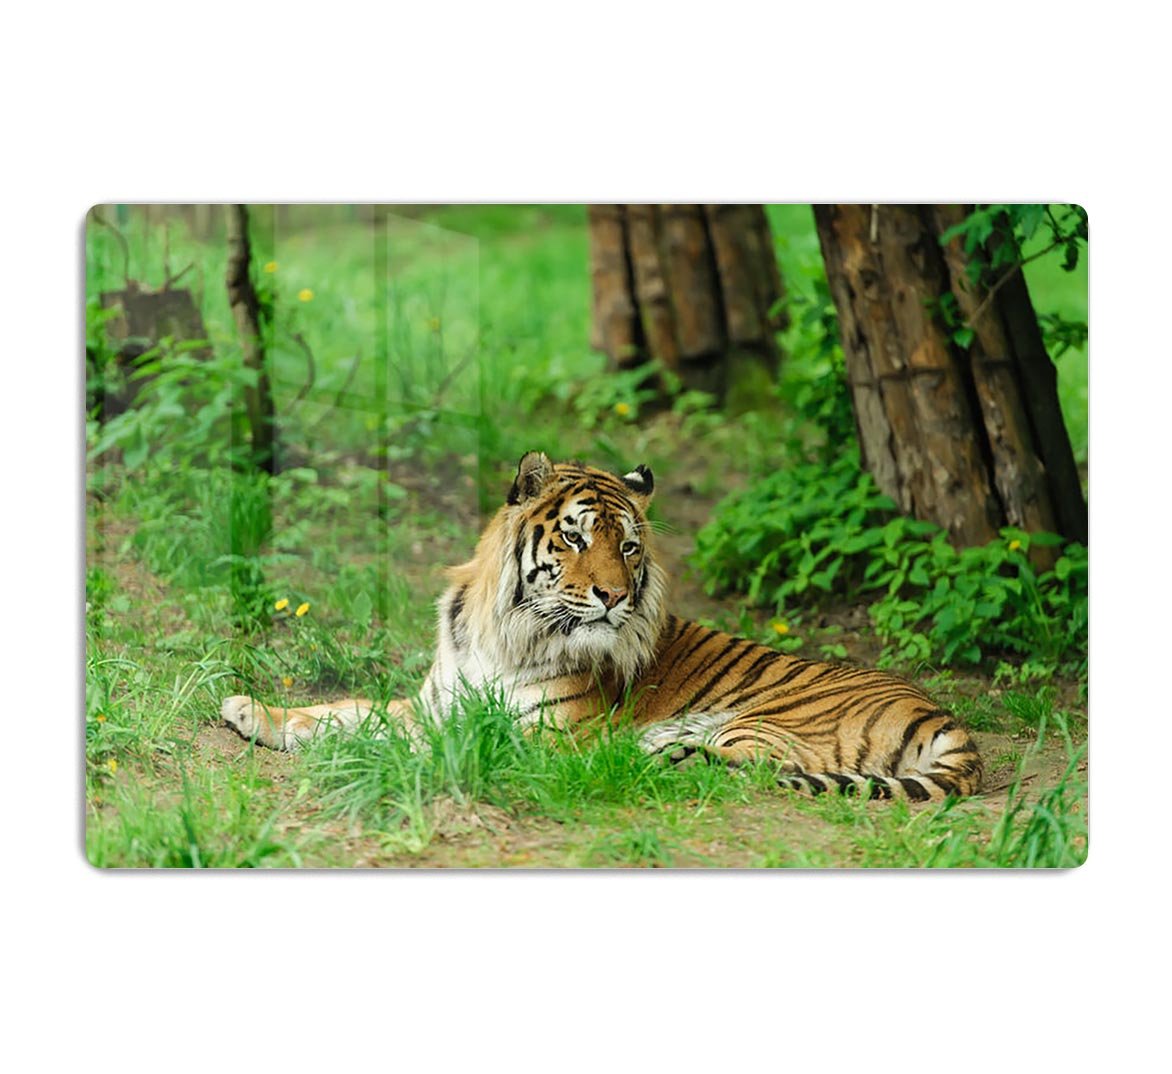 Tiger on the green grass HD Metal Print - Canvas Art Rocks - 1